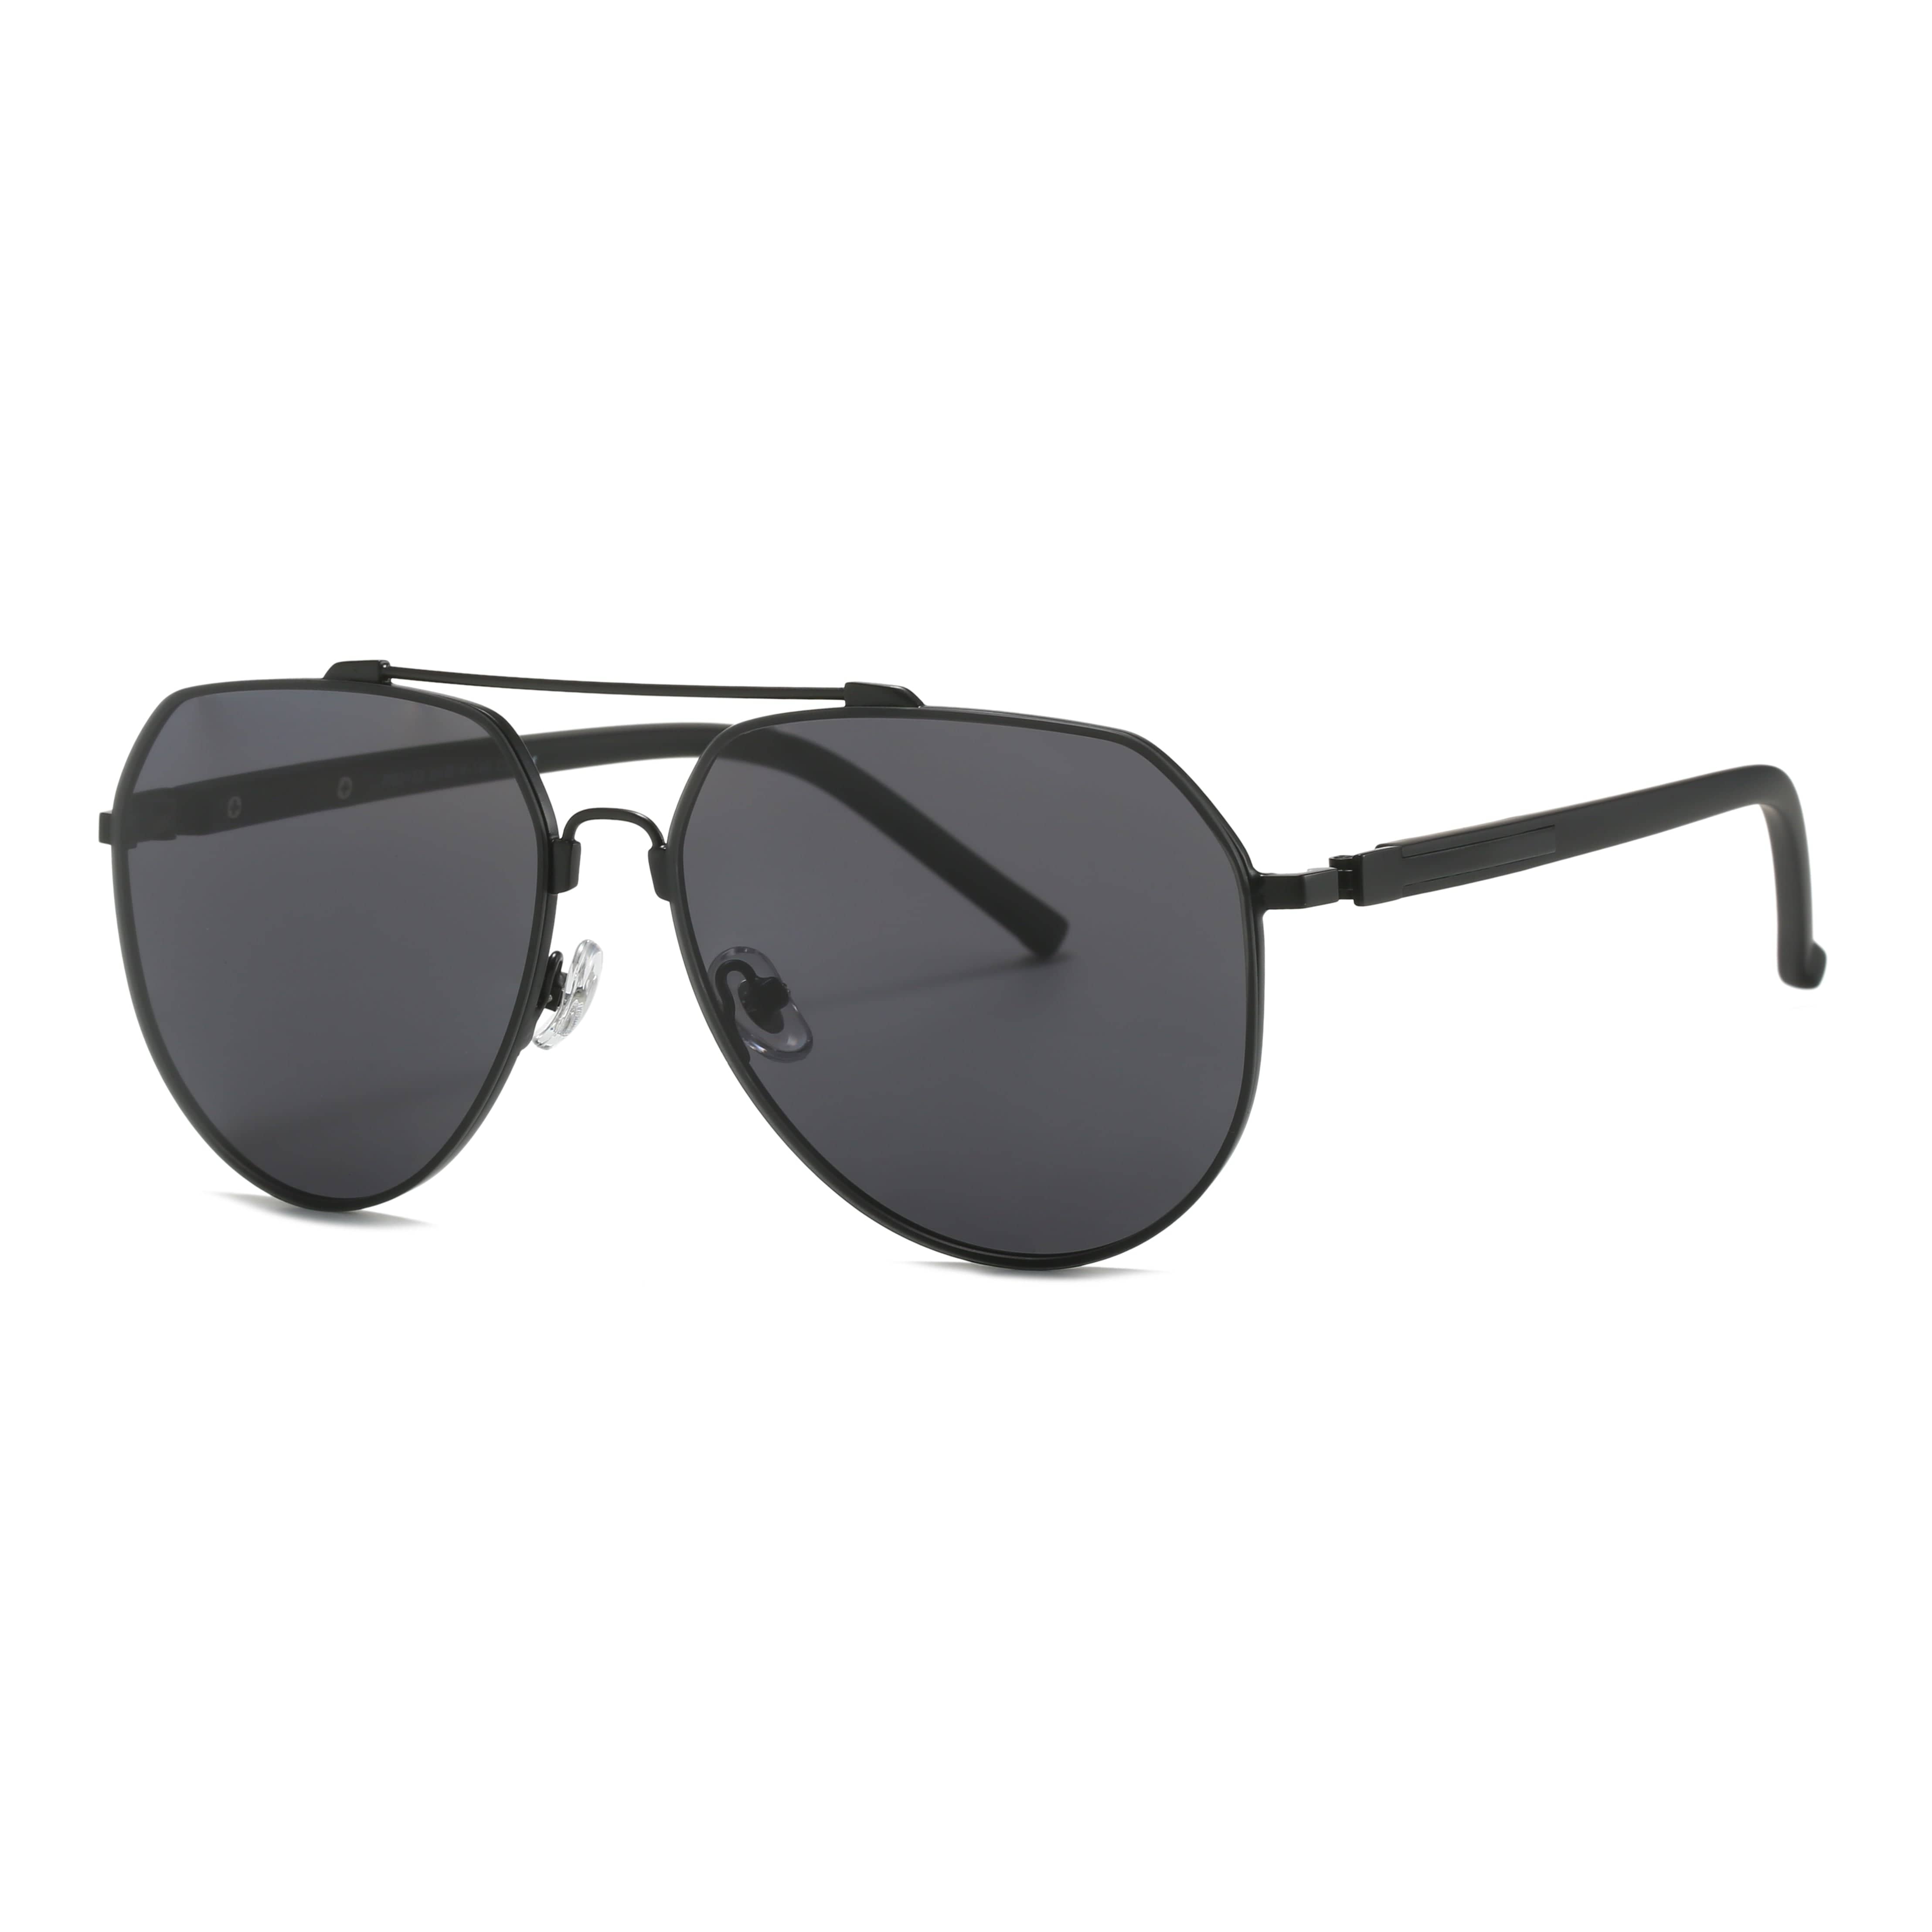 GIUSTIZIERI VECCHI Sunglasses Medium / Black SunSpark Aviator Uno